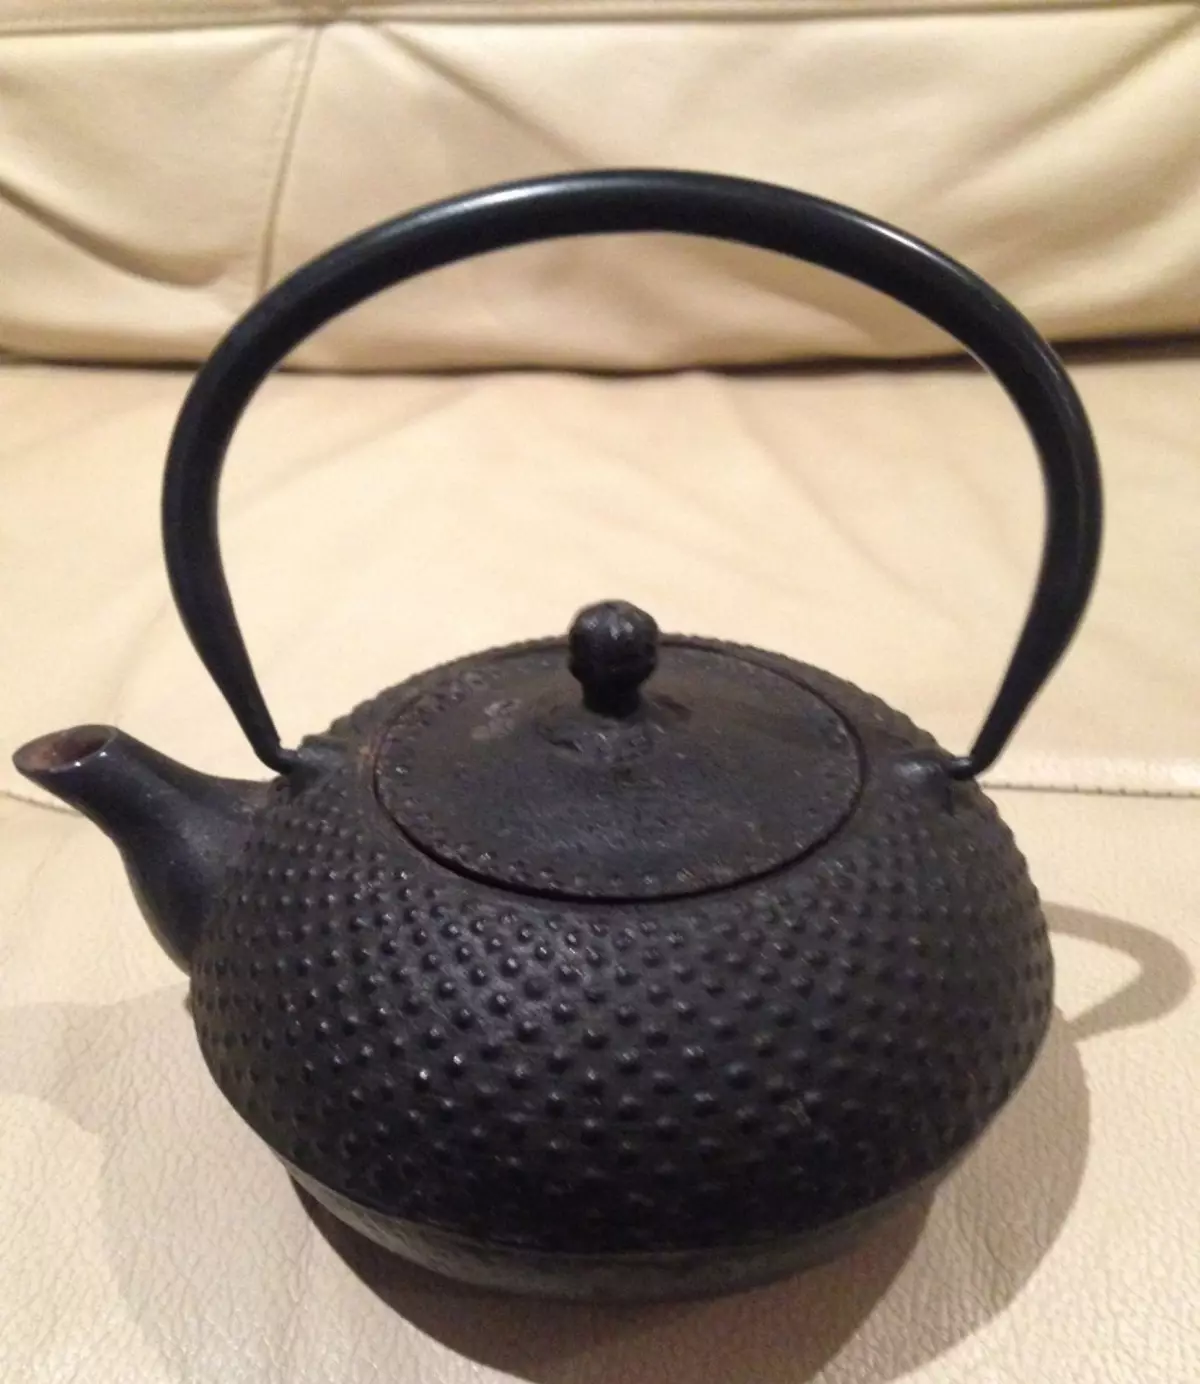 Cast რკინის შედუღების Teapots: როგორ ავირჩიოთ kettle საწყისი თუჯის რკინის ჩაის მწიფდება? Დადებითი და უარყოფითი მხარეები. შეფასება 10986_7